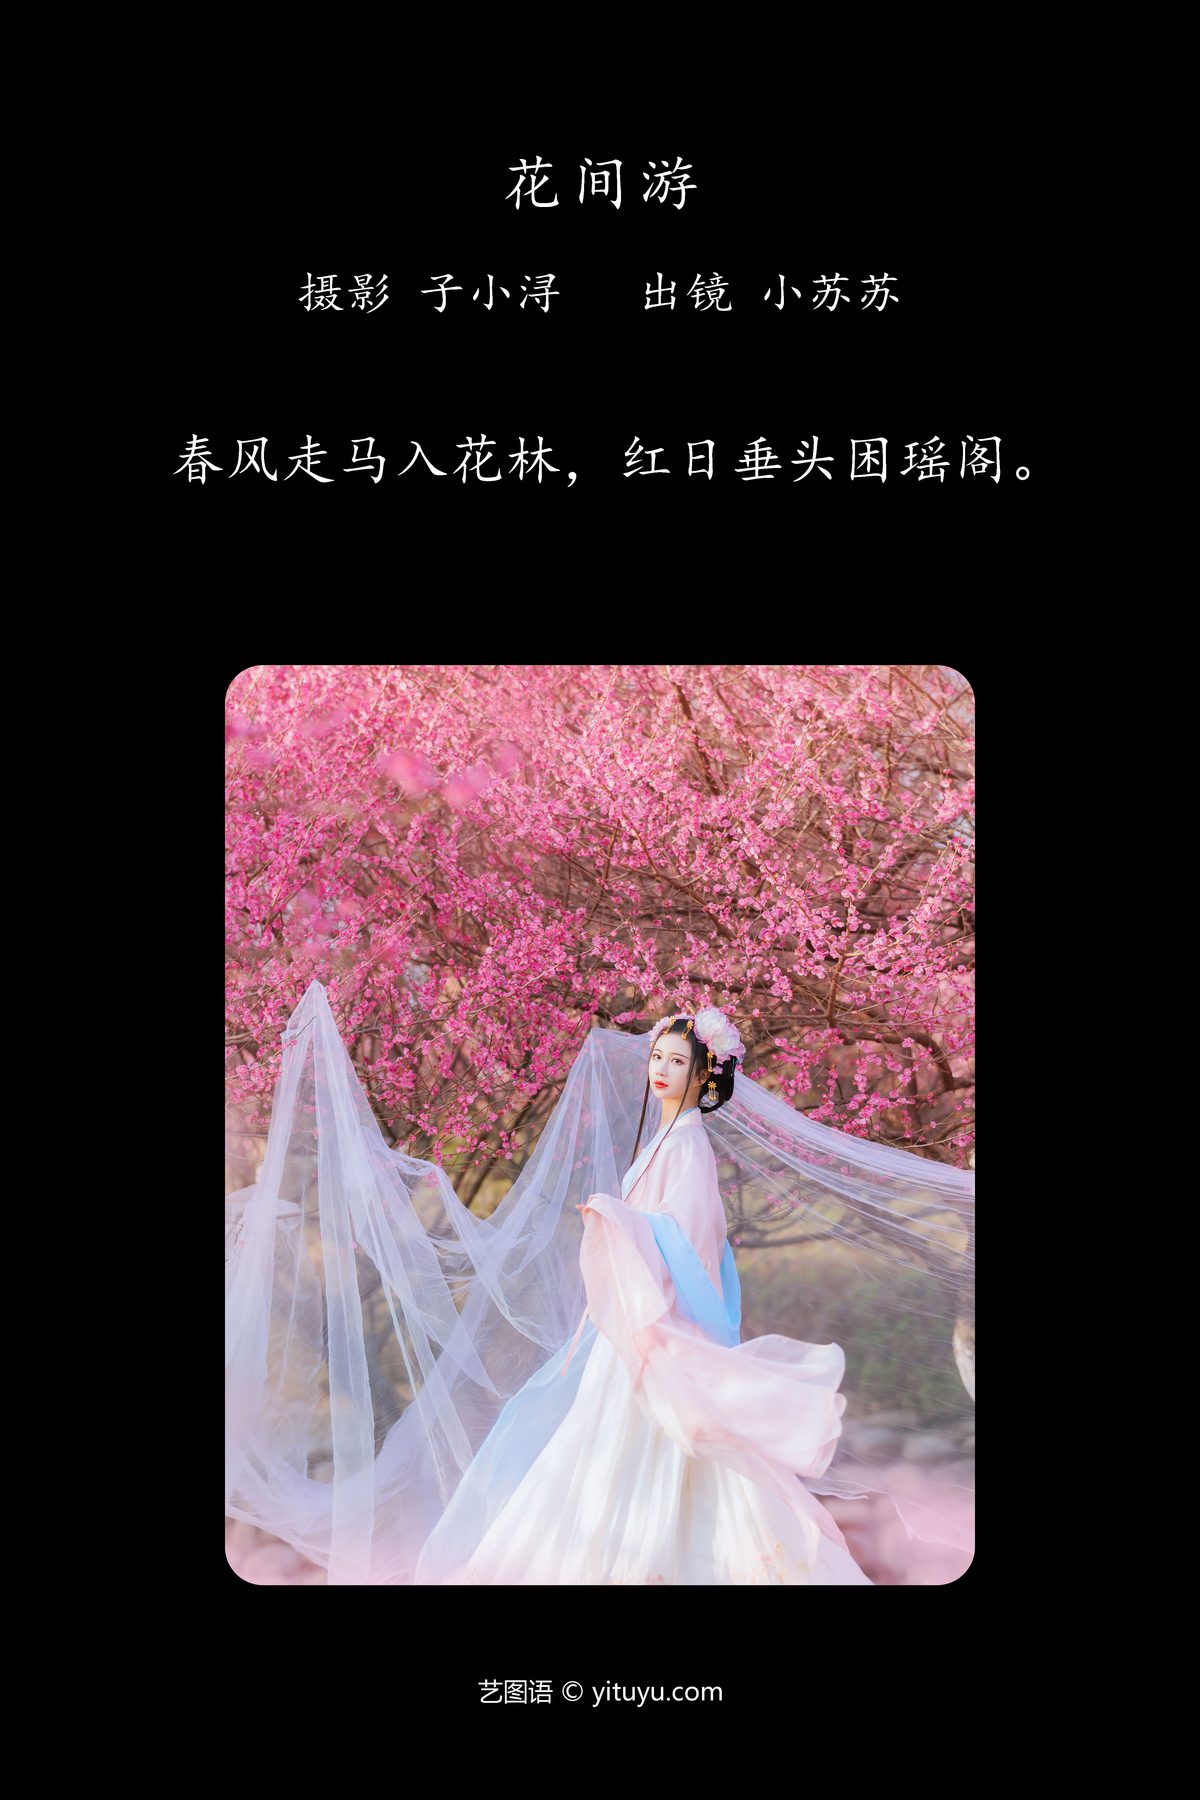 YiTuYu艺图语 Vol 4485 Qi Luo Sheng De Xiao Su Su 0002 5011463434.jpg